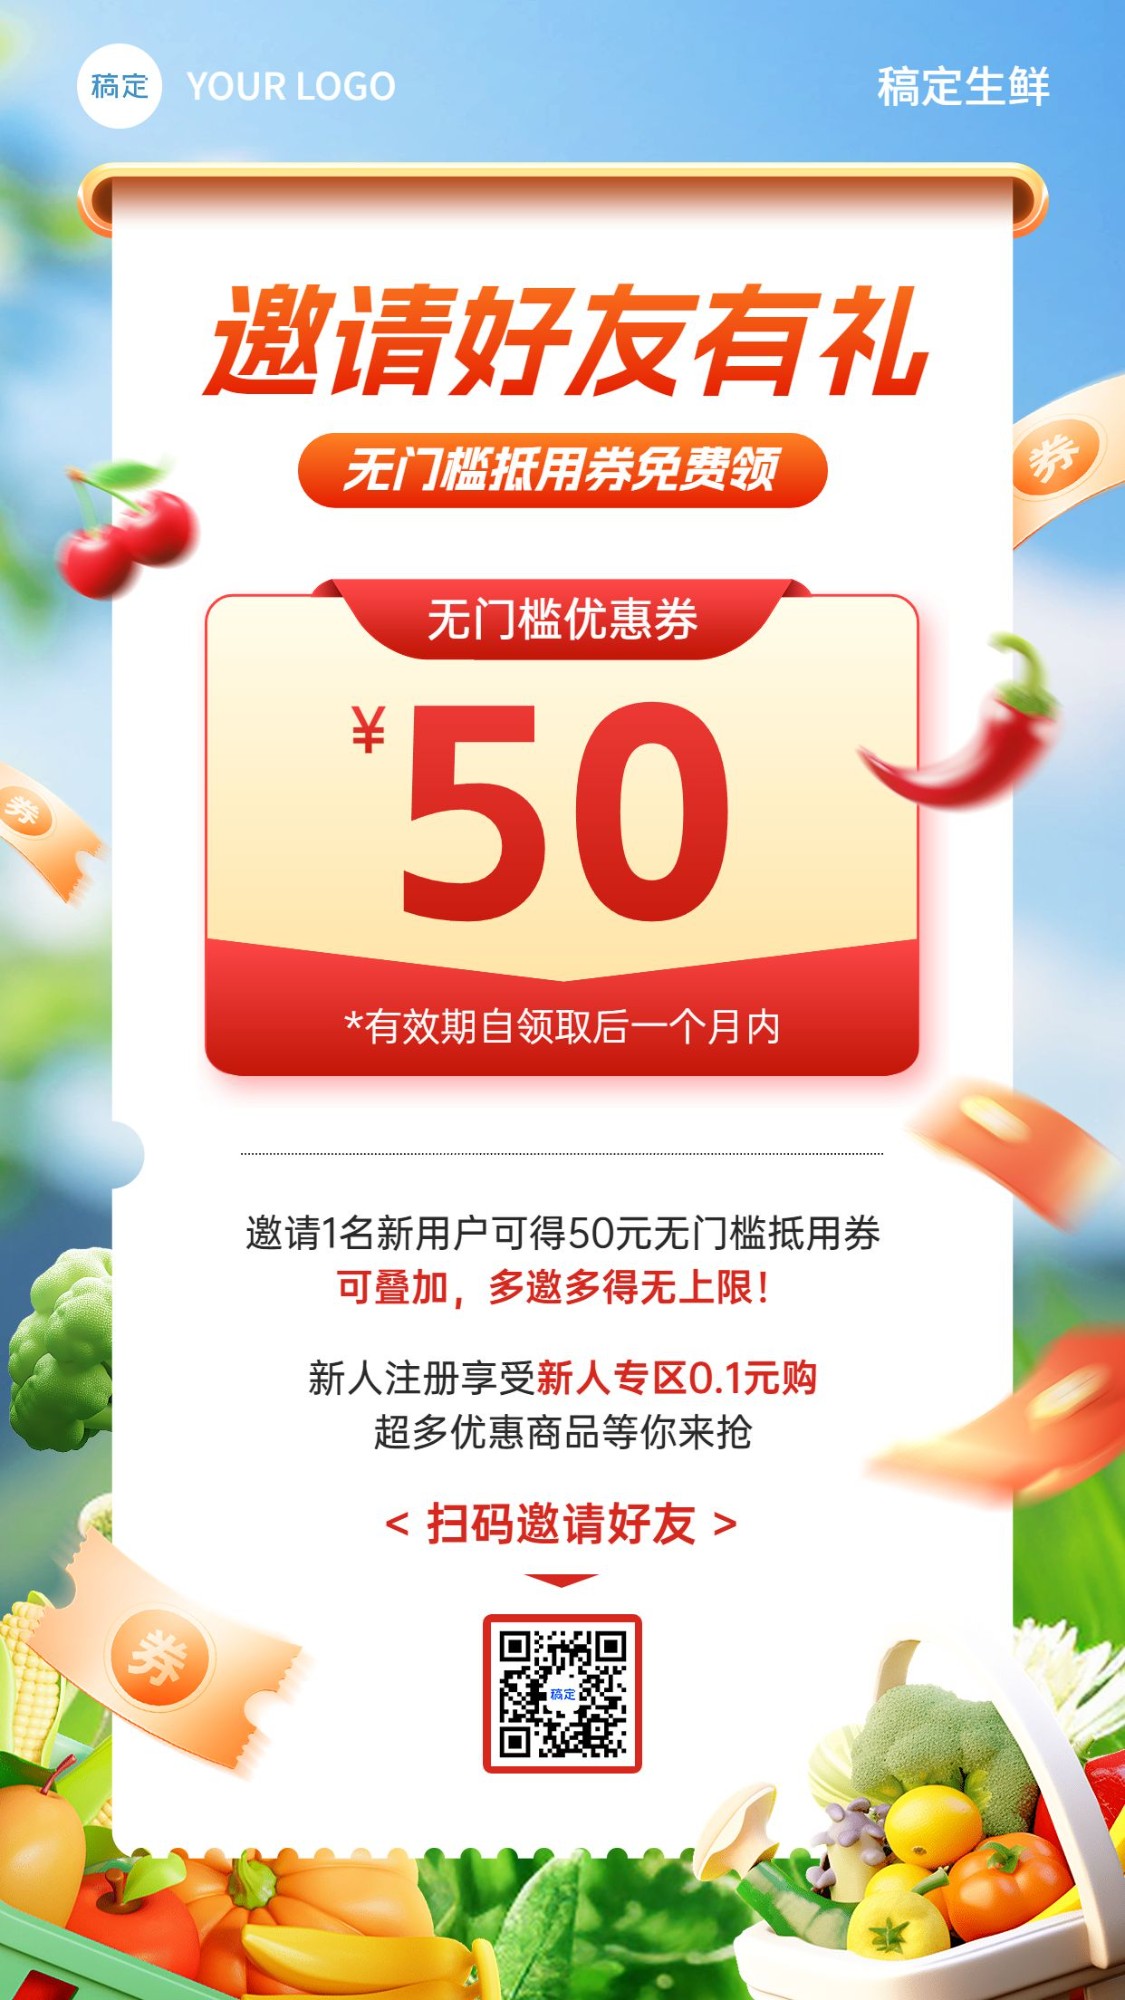 食品生鲜邀请好友活动宣传3D实景手机海报